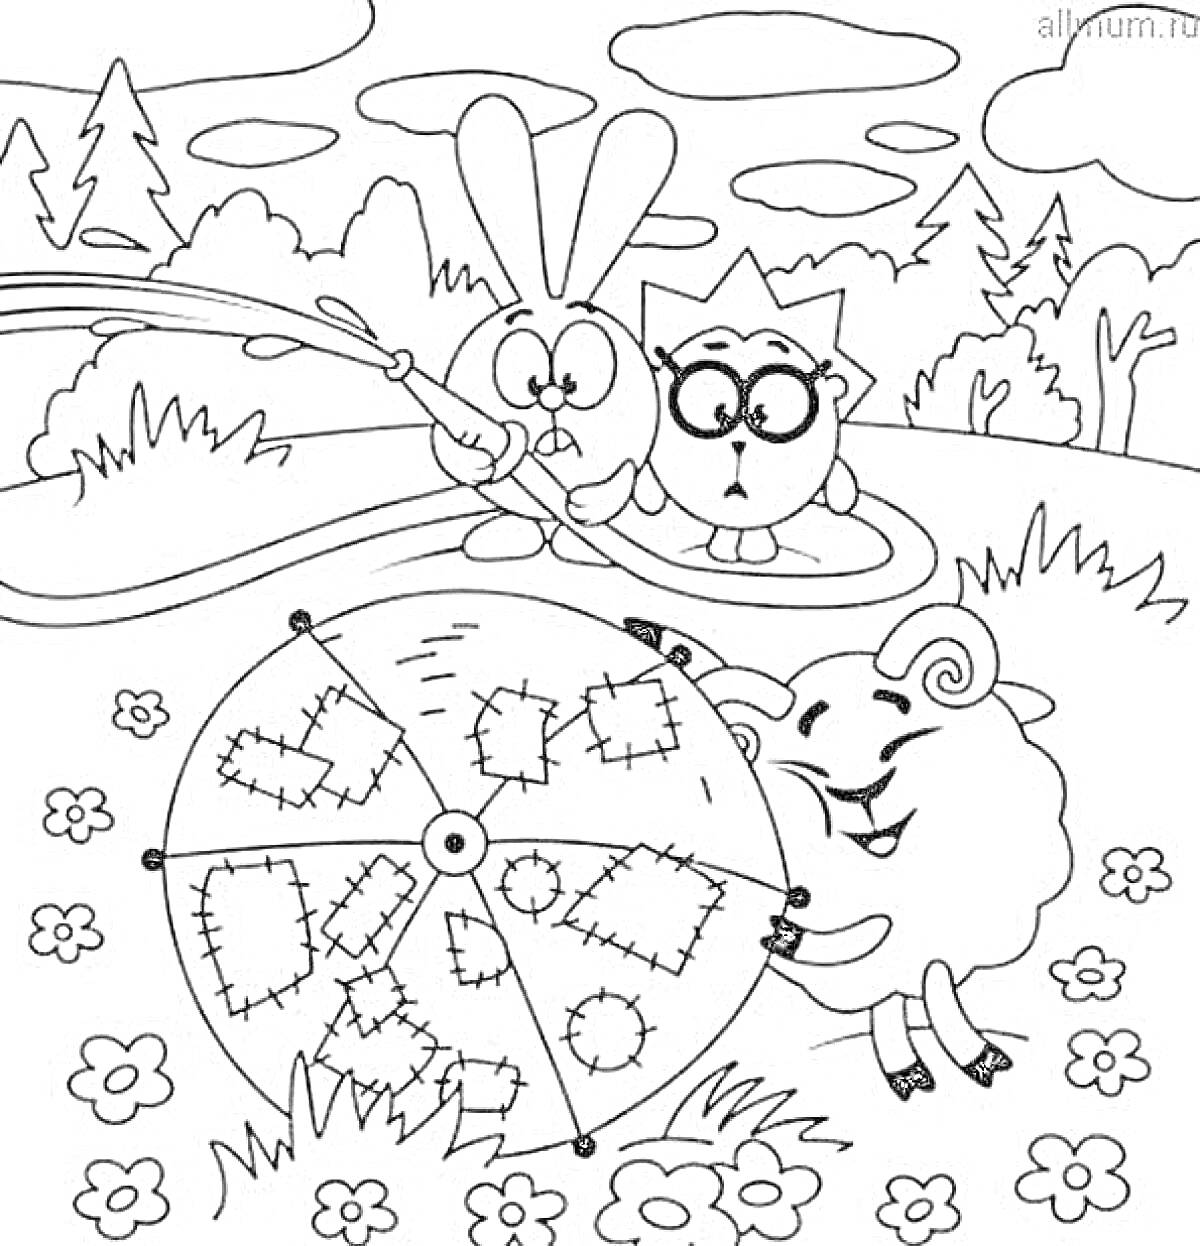 Раскраска смешарики, заяц с удочкой, сова с книгой, баран крутит колесо с лоскутками, поле с цветами и деревьями на заднем плане